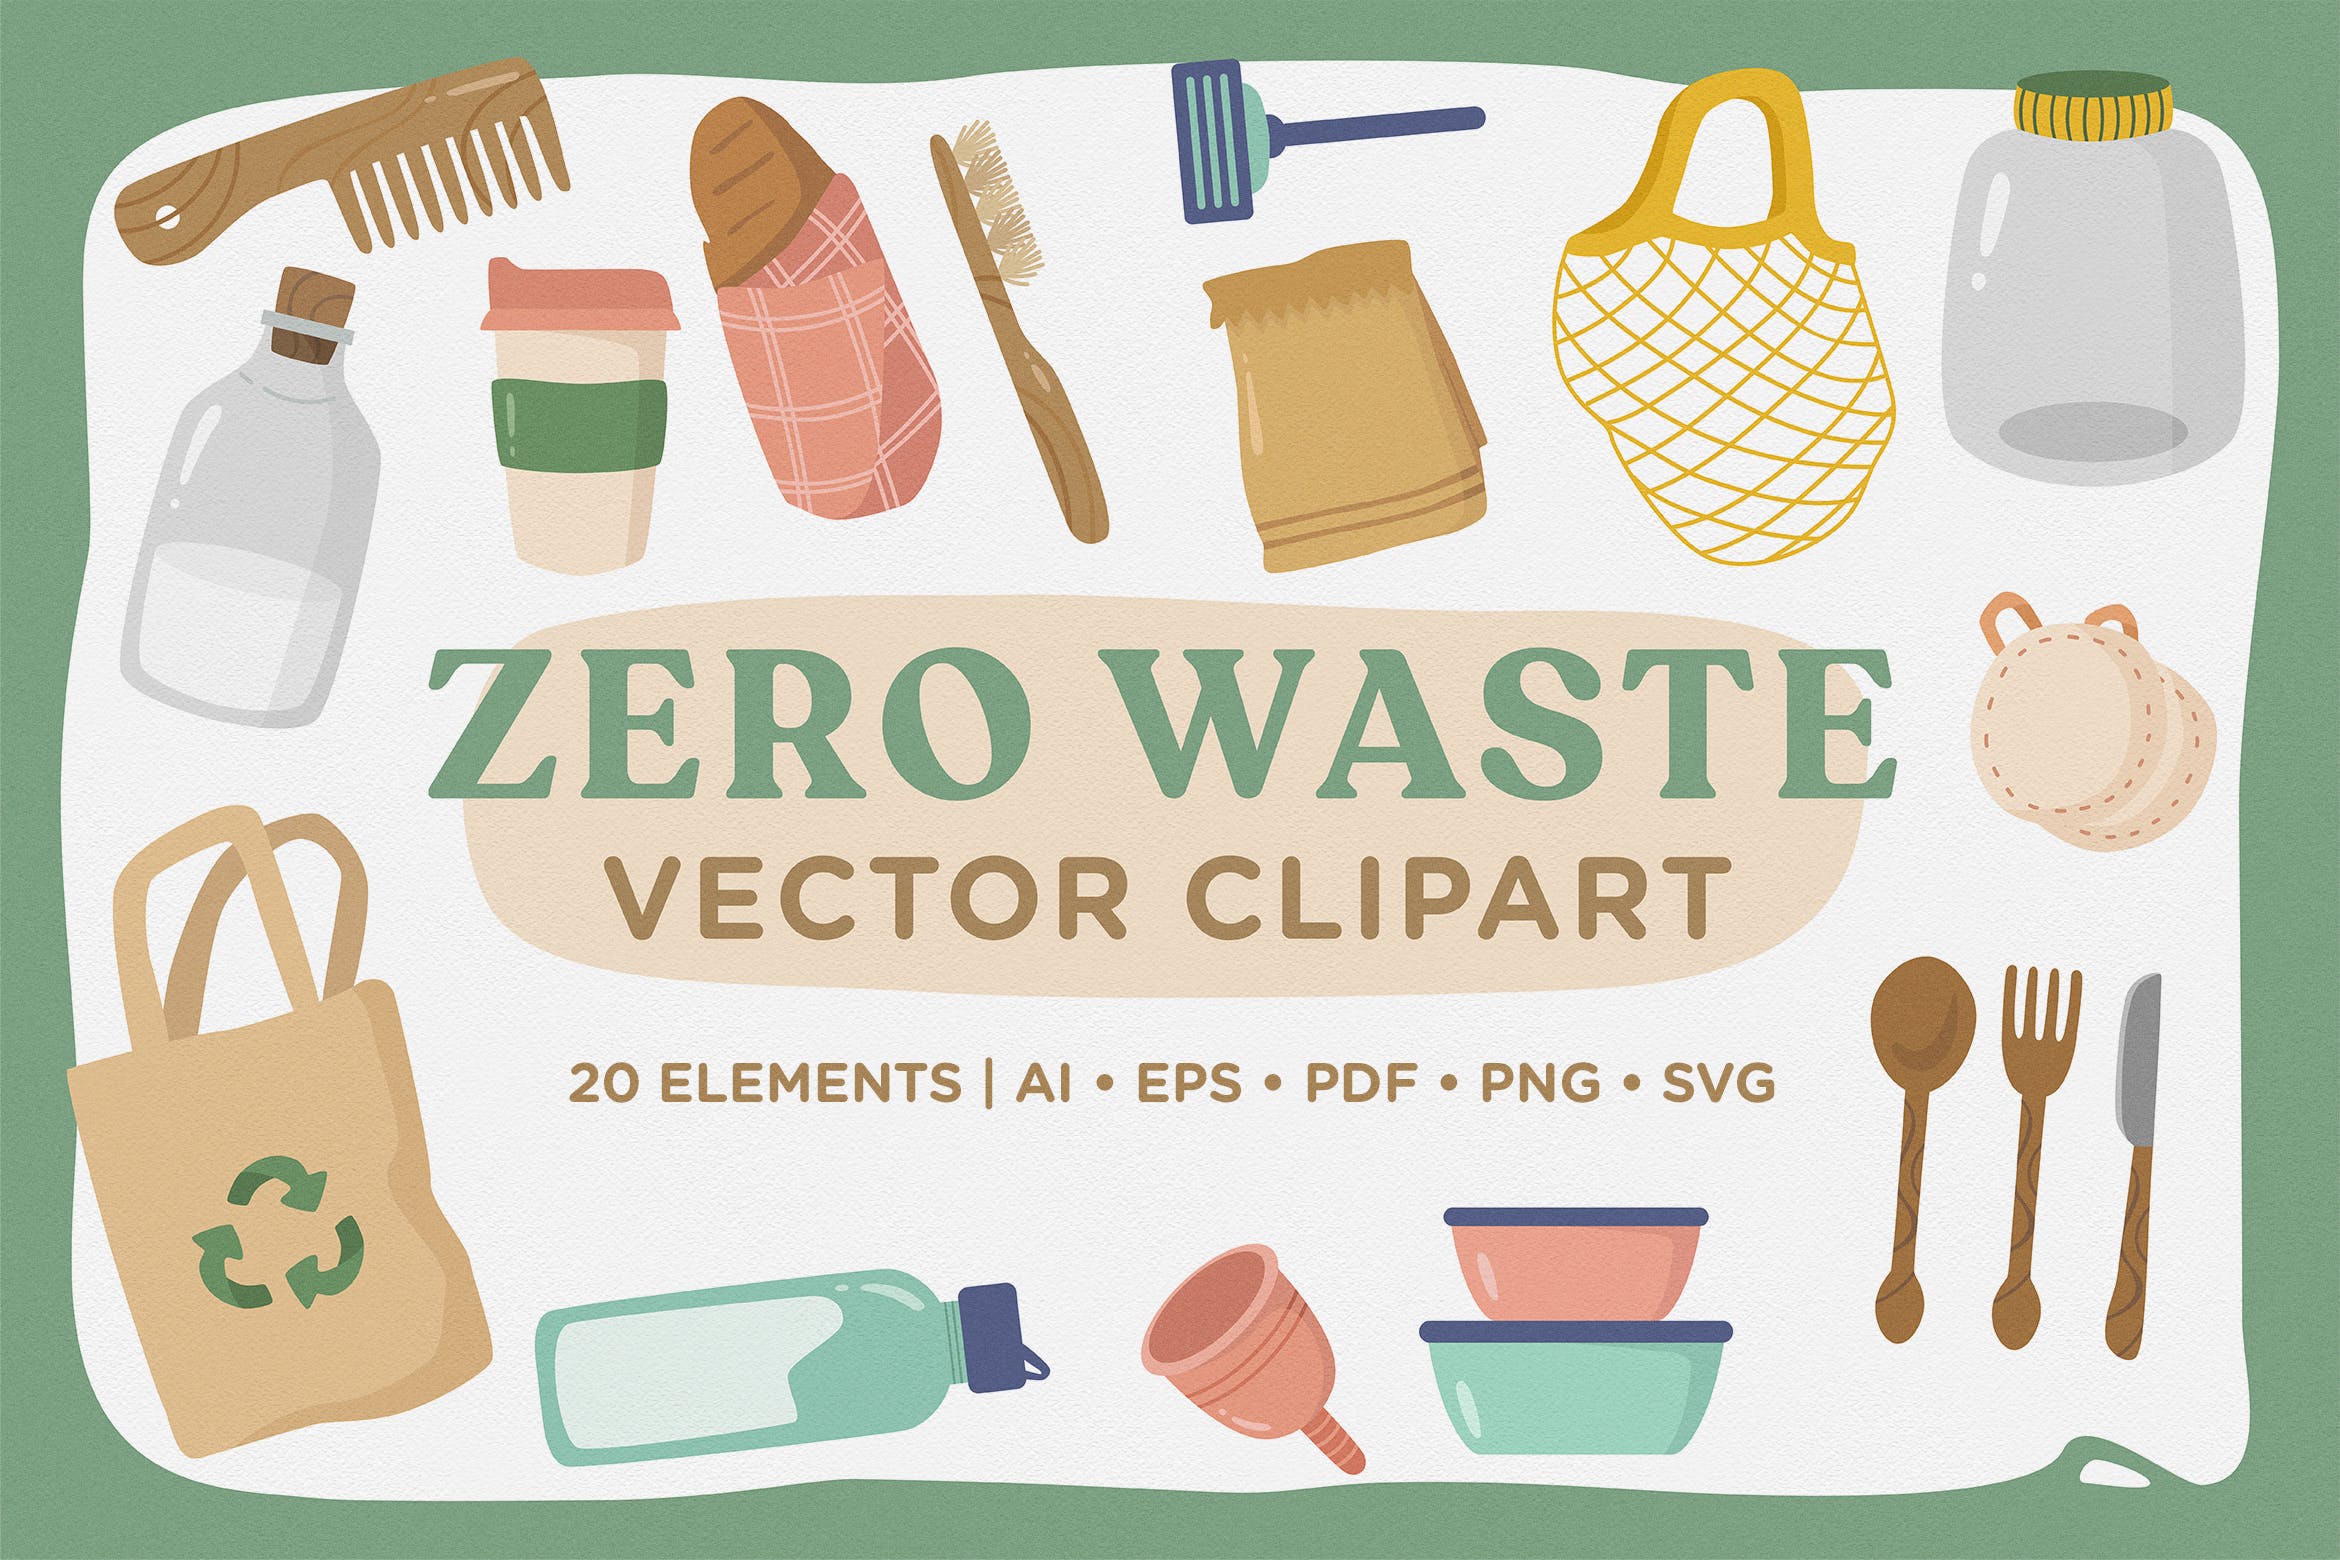 环保餐具环保主义主题矢量剪贴画素材 Zero Waste Vector CLipart Pack插图